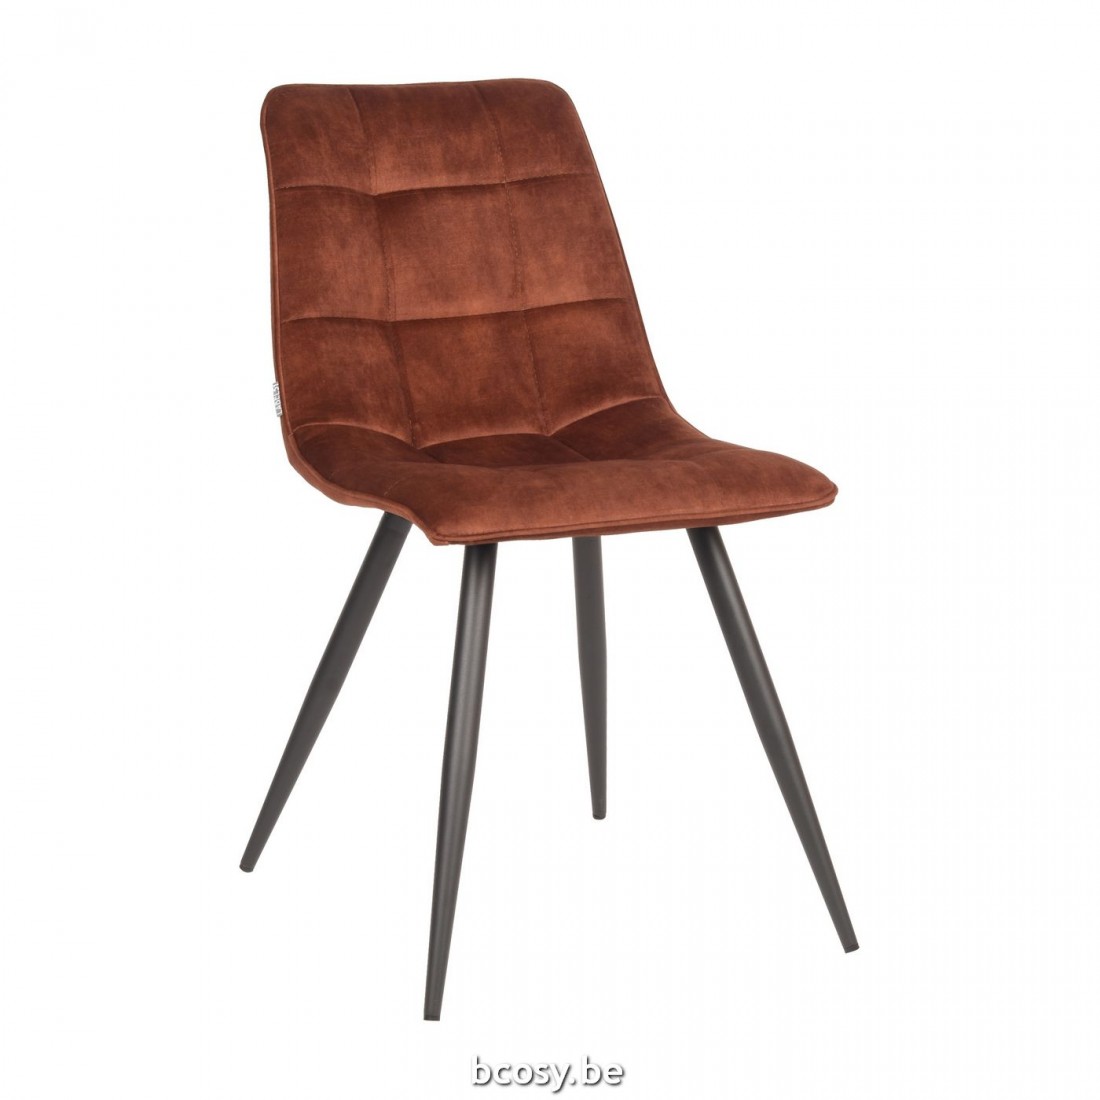 LABEL51 Eetkamerstoel Jelt Rust LABEL51 UK-30.320 style="font-size: 6pt;"> stoelen eetkamerstoelen eethoekstoelen eettafelstoelen chaises de repas dining chairs stuhl stuehle </span> - Stoelen Krukken - BCosy.be Lifestyle ...